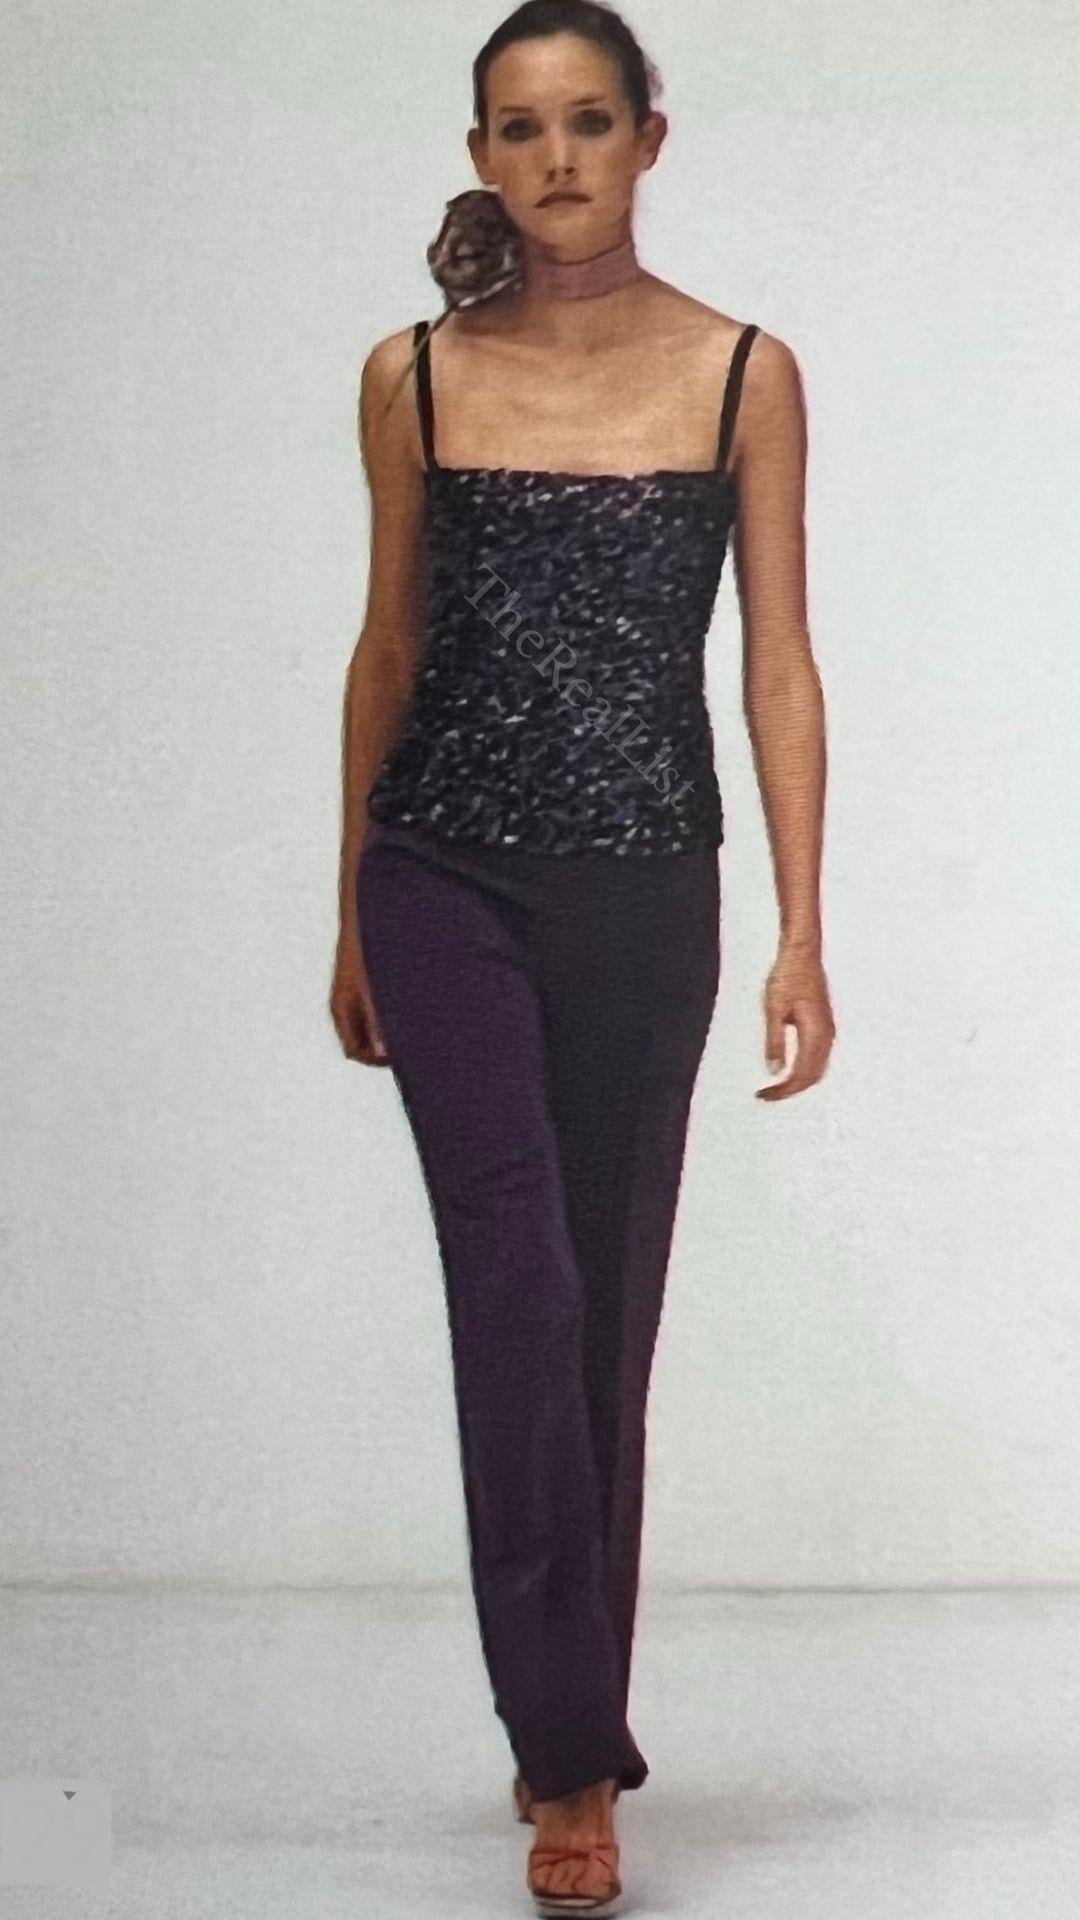 Voici un superbe top Dolce and Gabbana à paillettes violettes. Issu de la collection automne/hiver 2000, ce haut a fait ses débuts sur l'un des podiums de la saison. Ce haut fabuleusement chatoyant est recouvert de paillettes violettes, avec